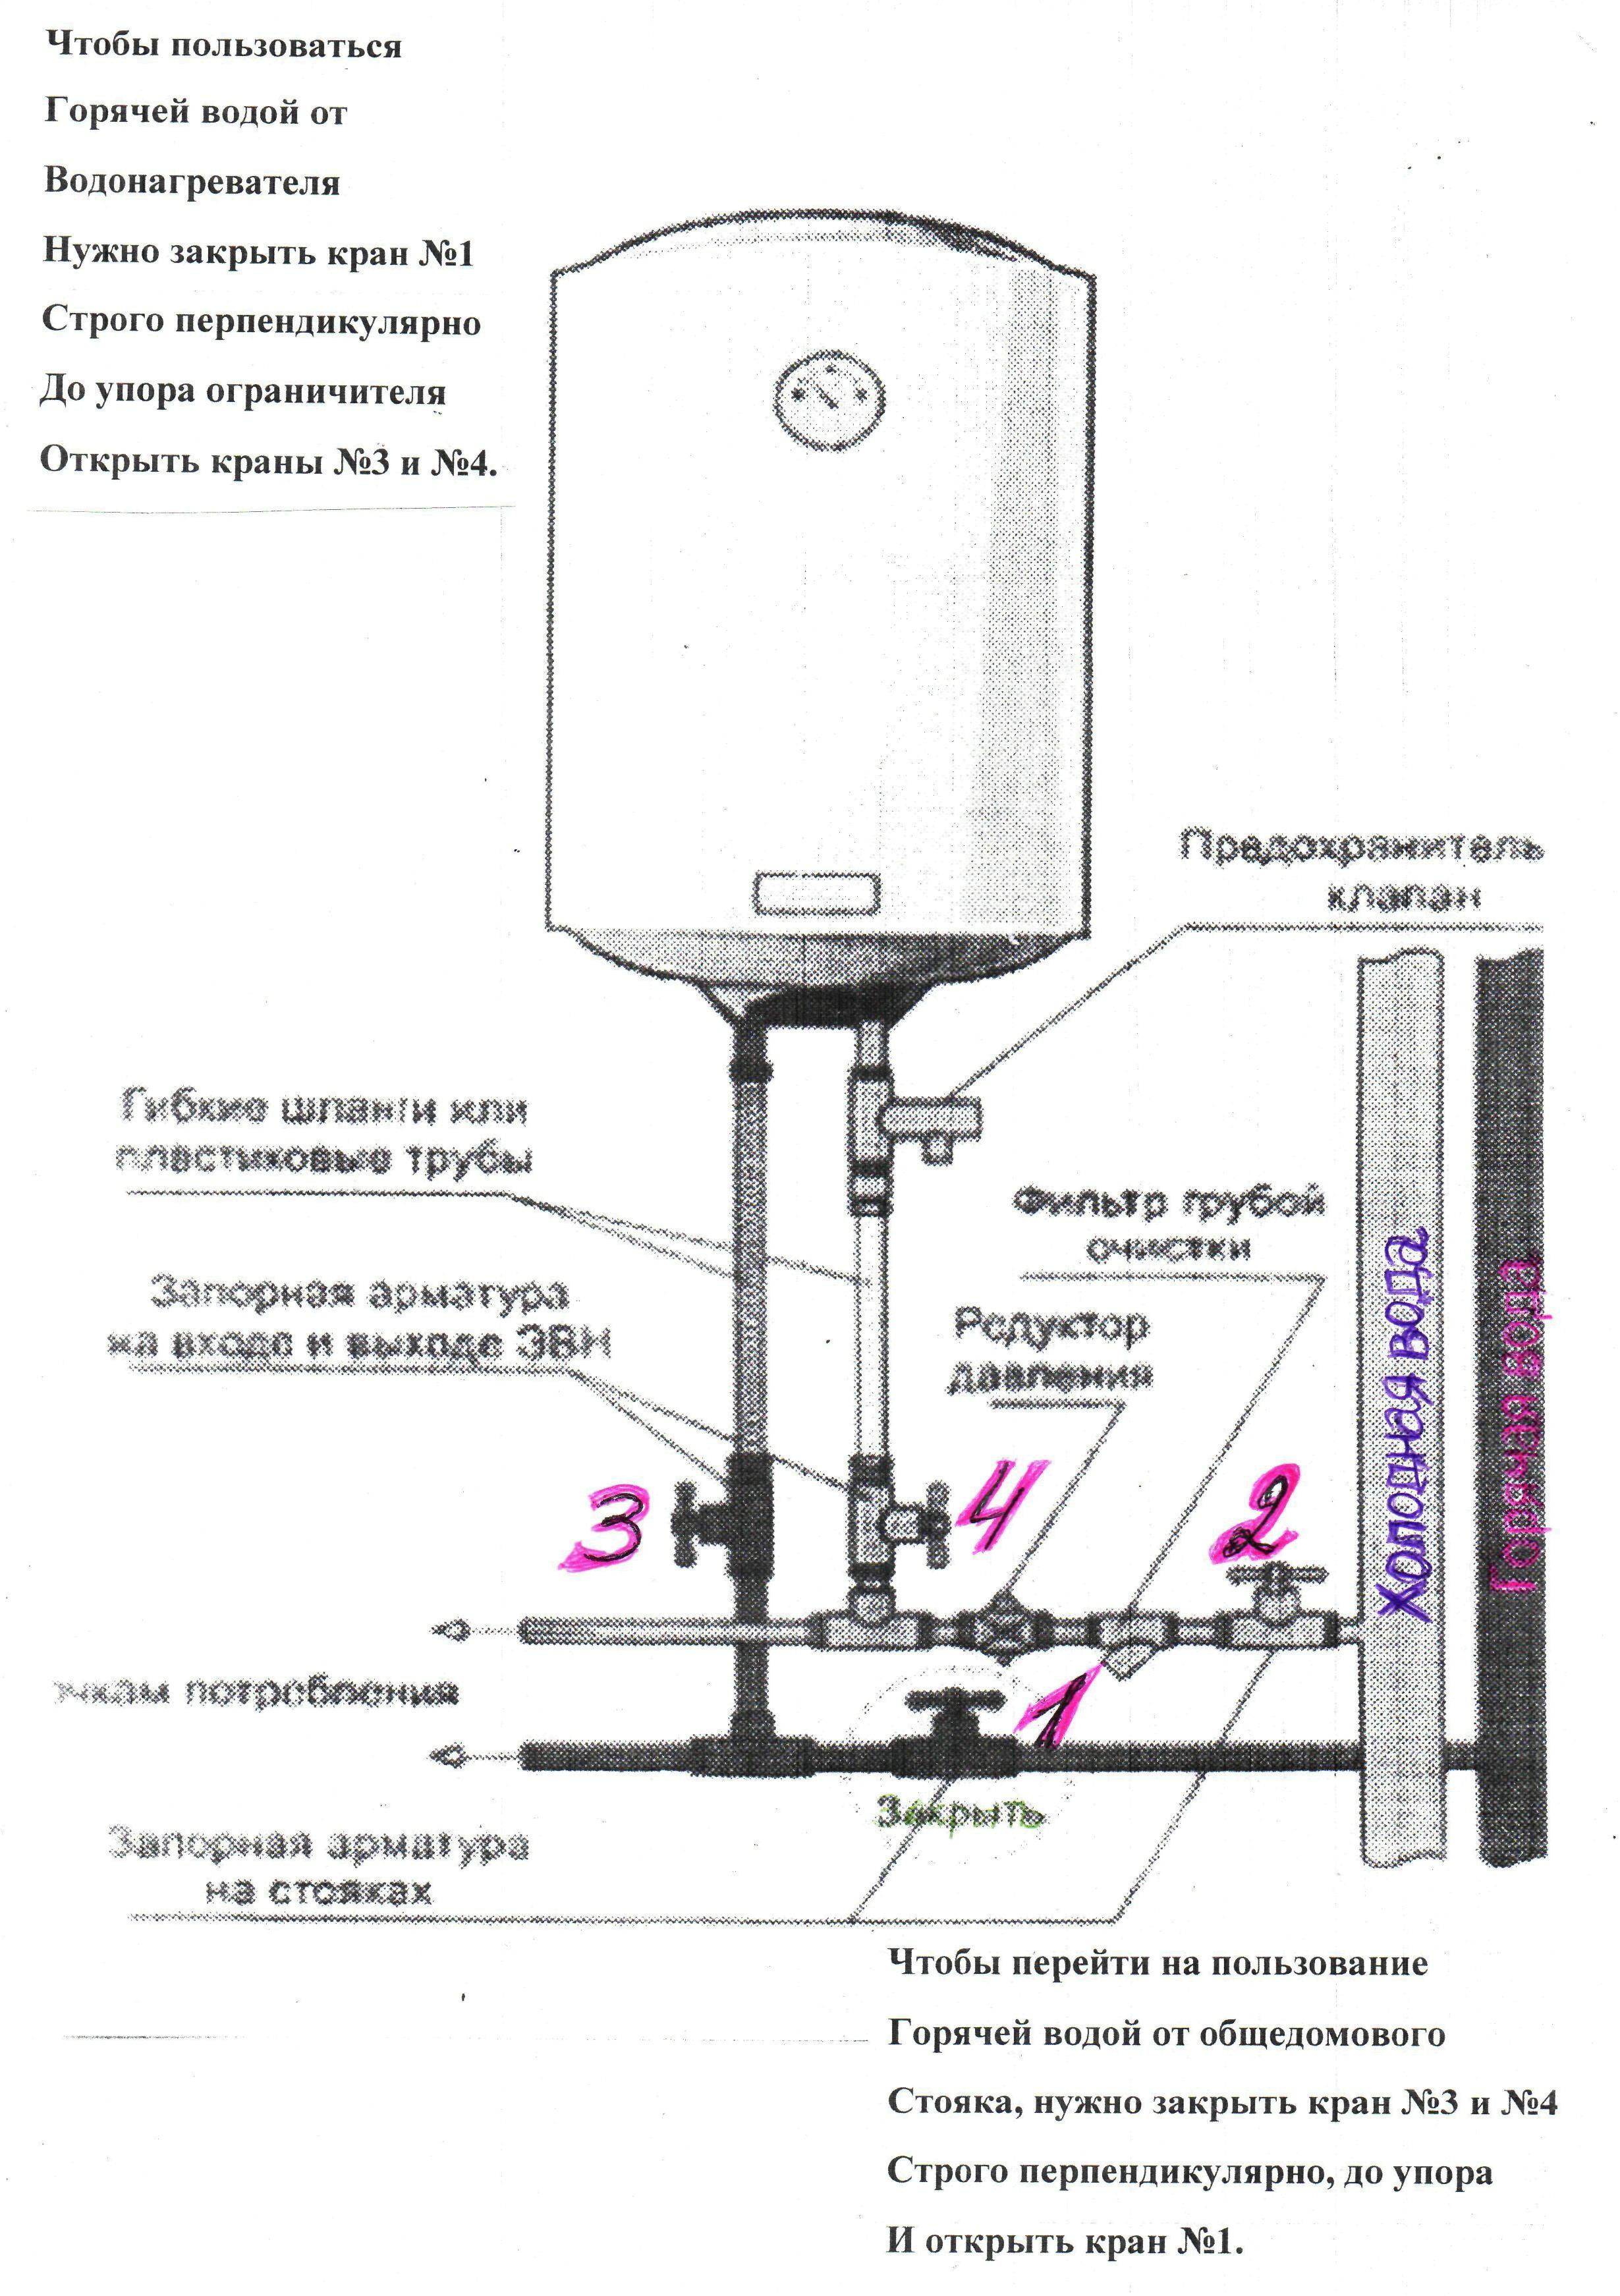 Инструкция по пользованию водонагревателем